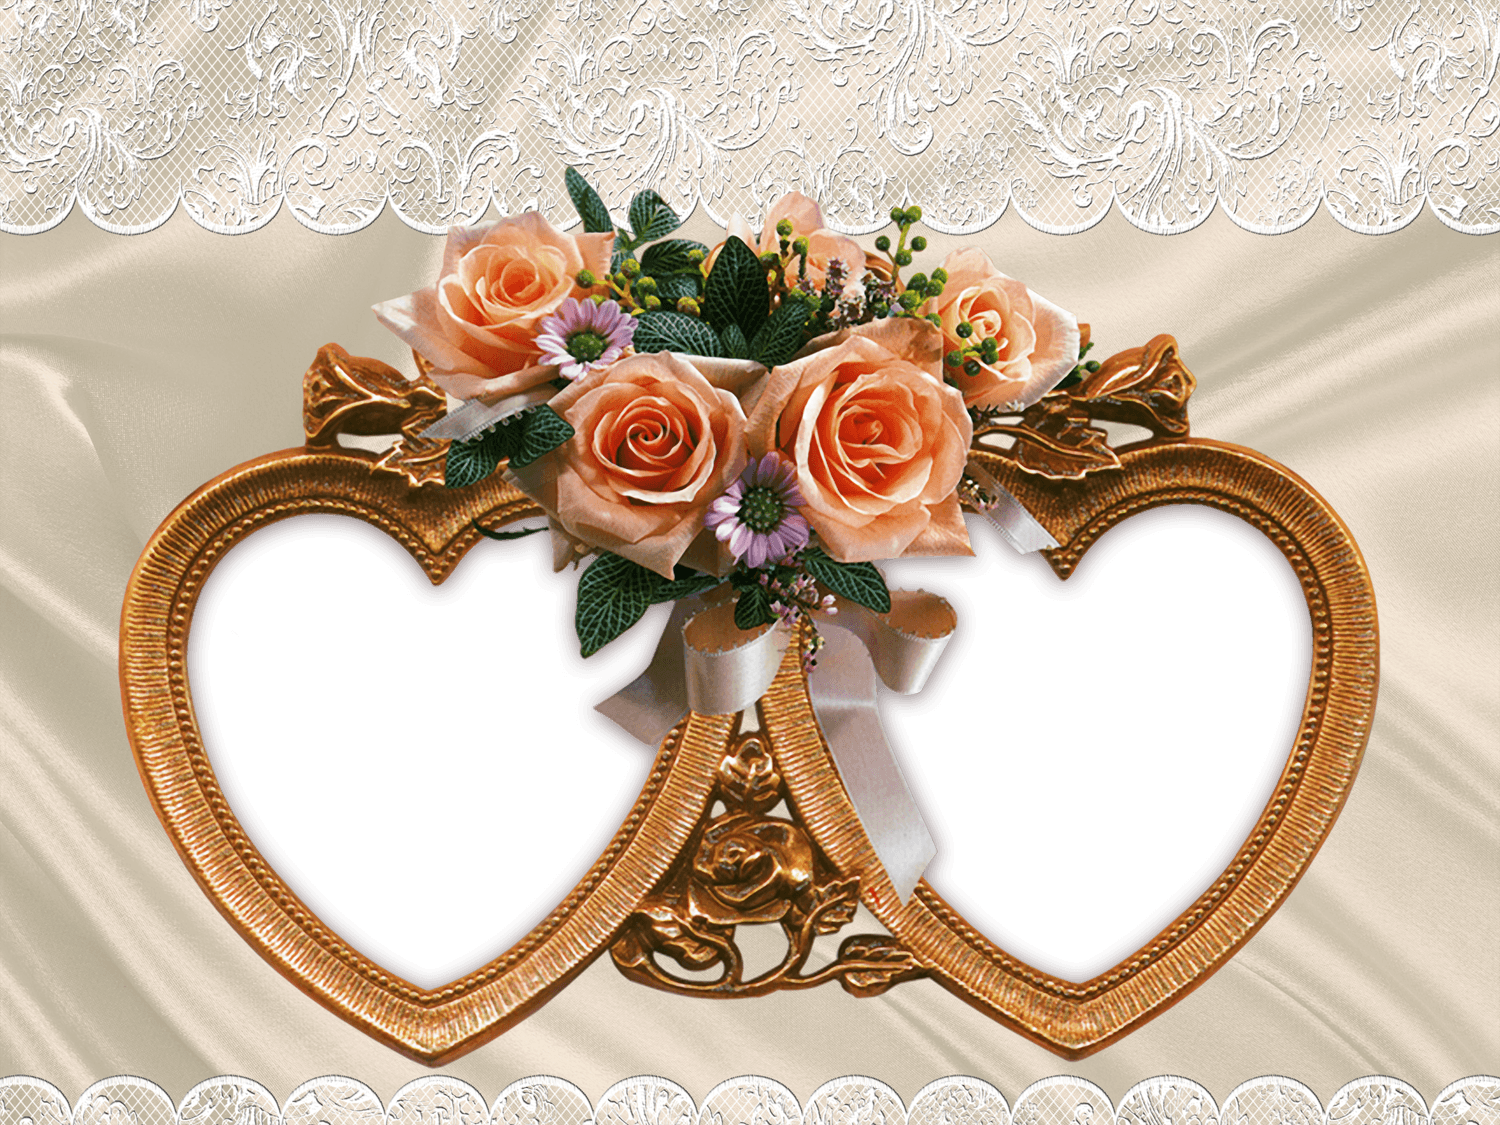 Unosposo E Una Sposa Celebrano Il Loro Amore In Una Intima Cerimonia Di Matrimonio.